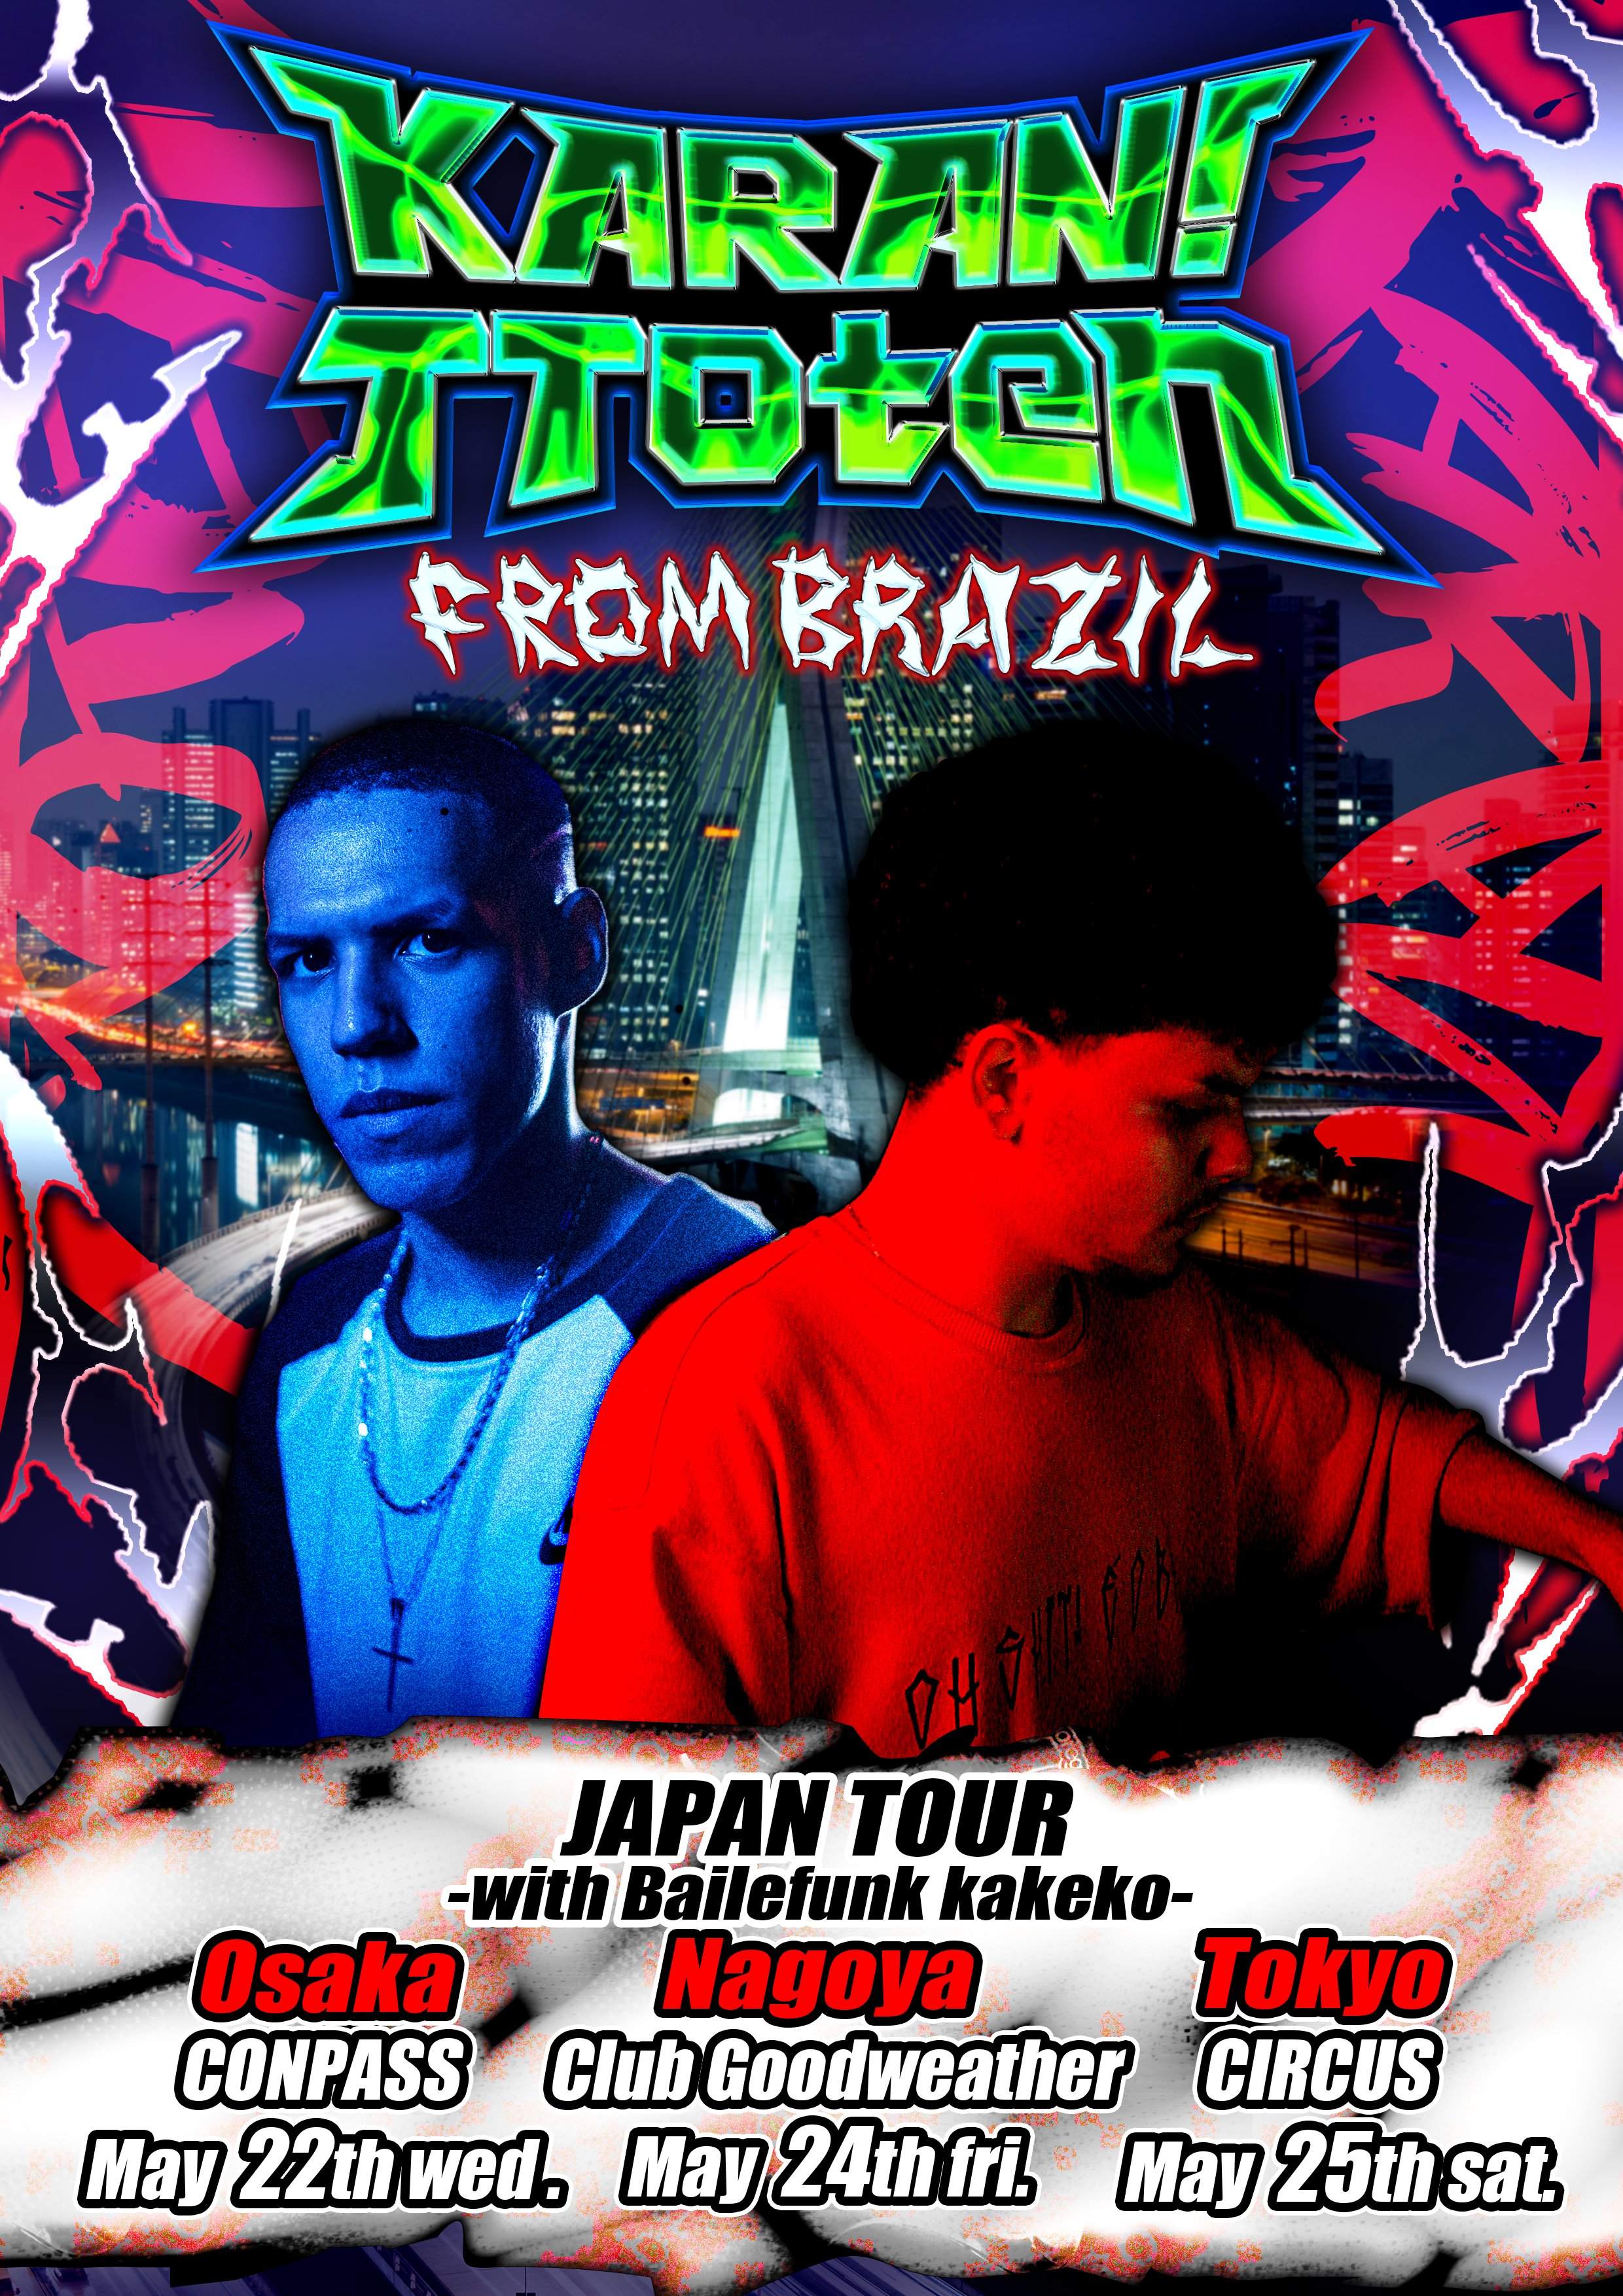 KARAN! & TToten JAPAN TOUR at Nagoya - フライヤー表